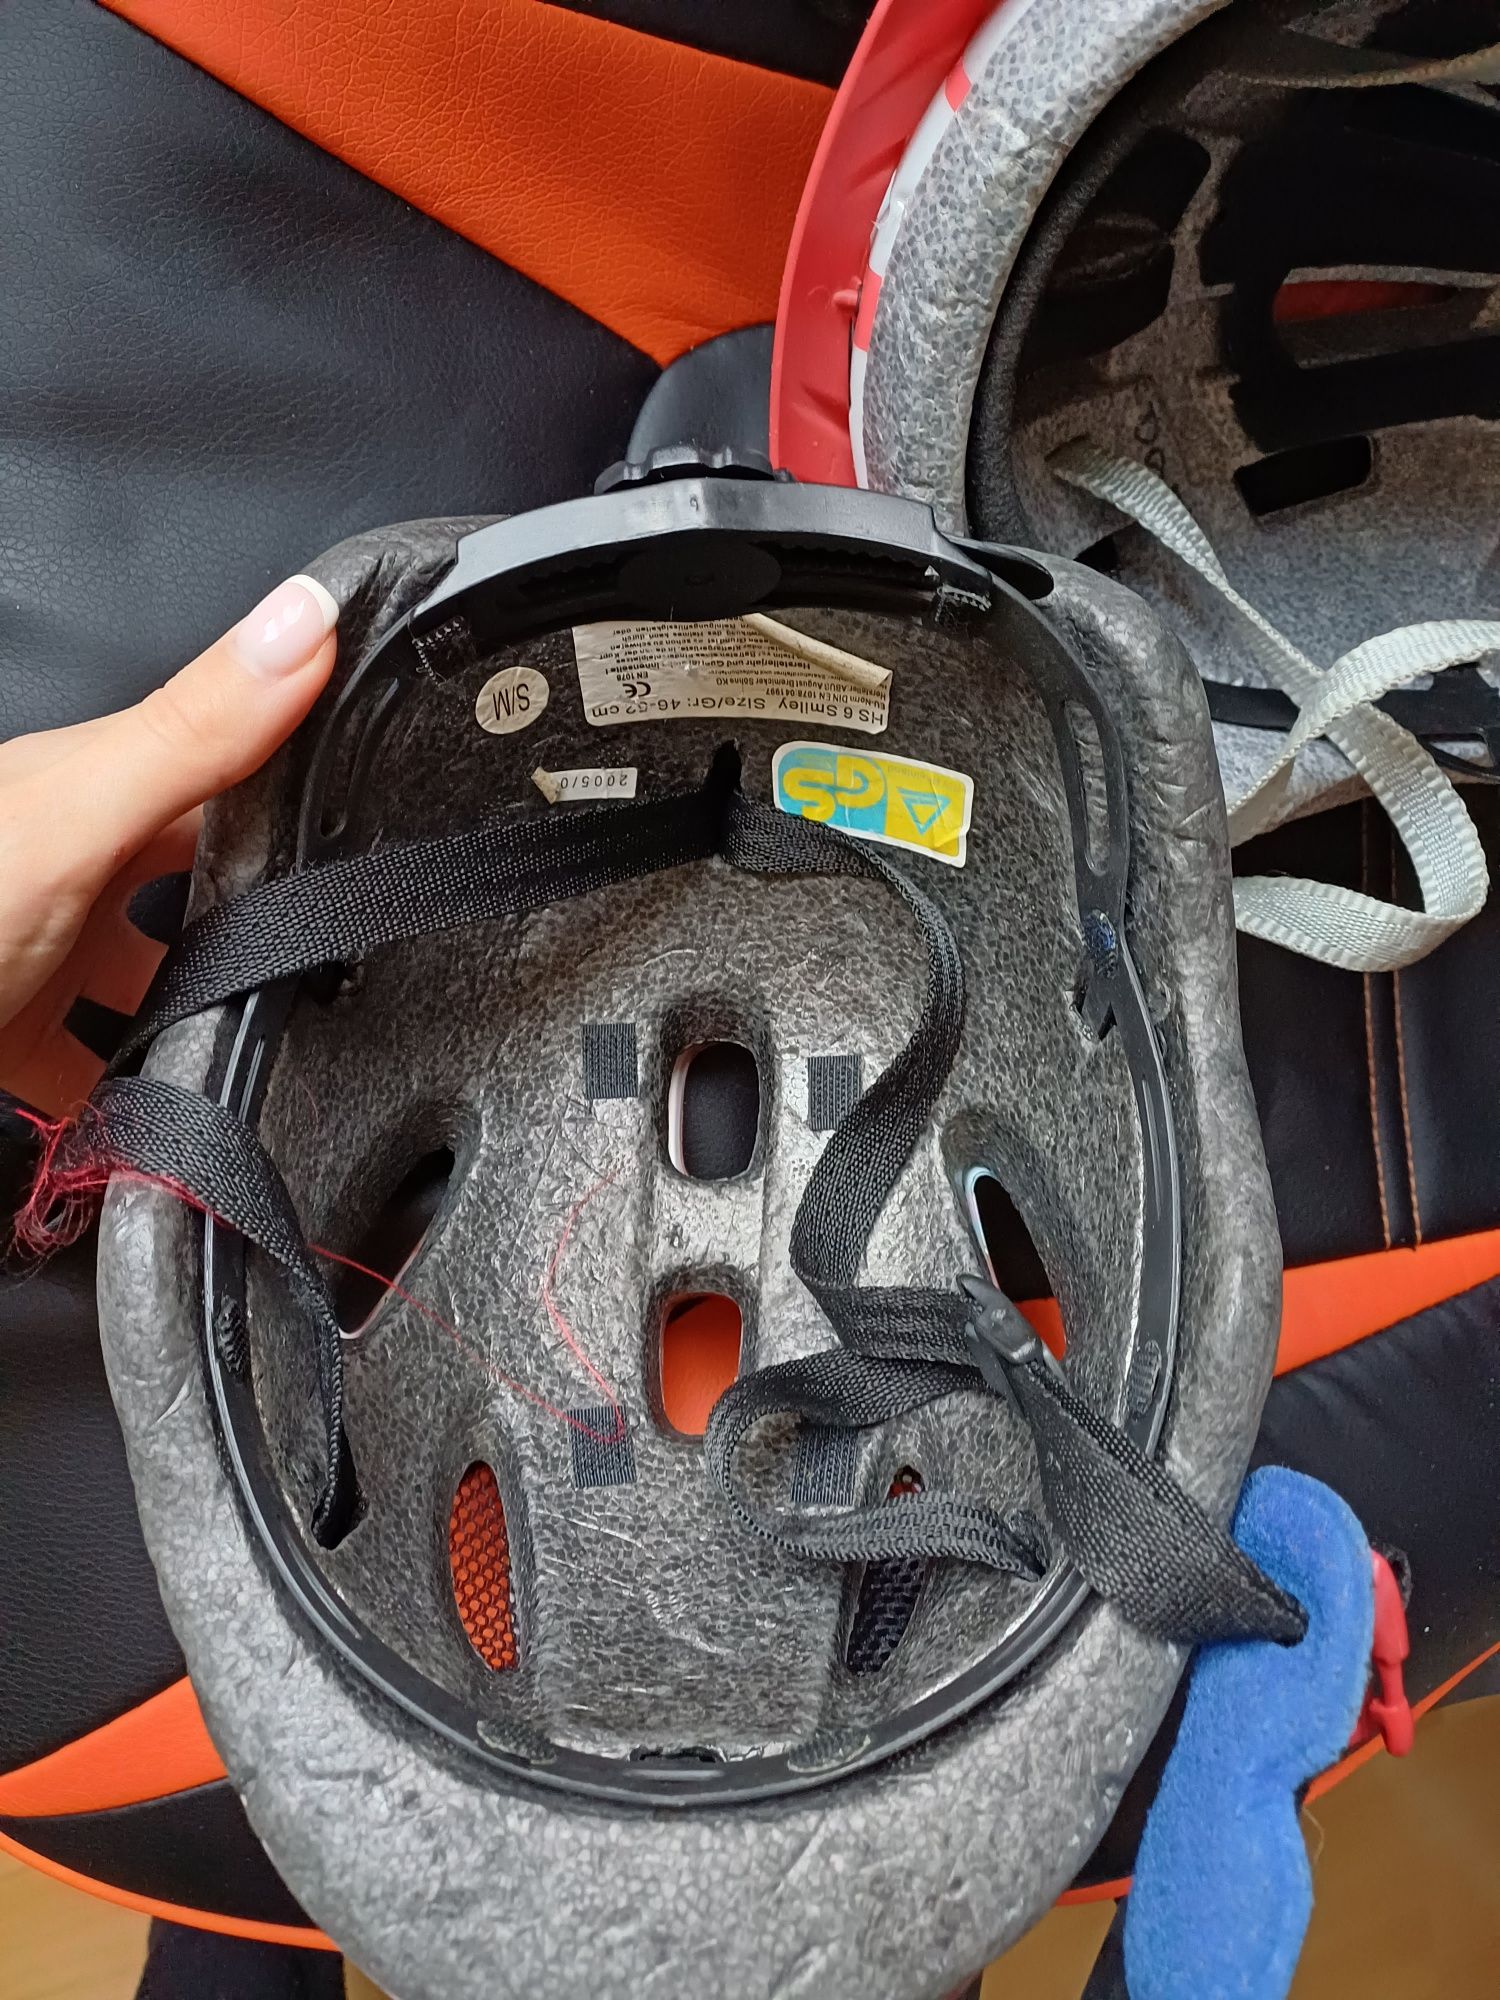 Шлемы велосипедные 46-52, 52-56 размер